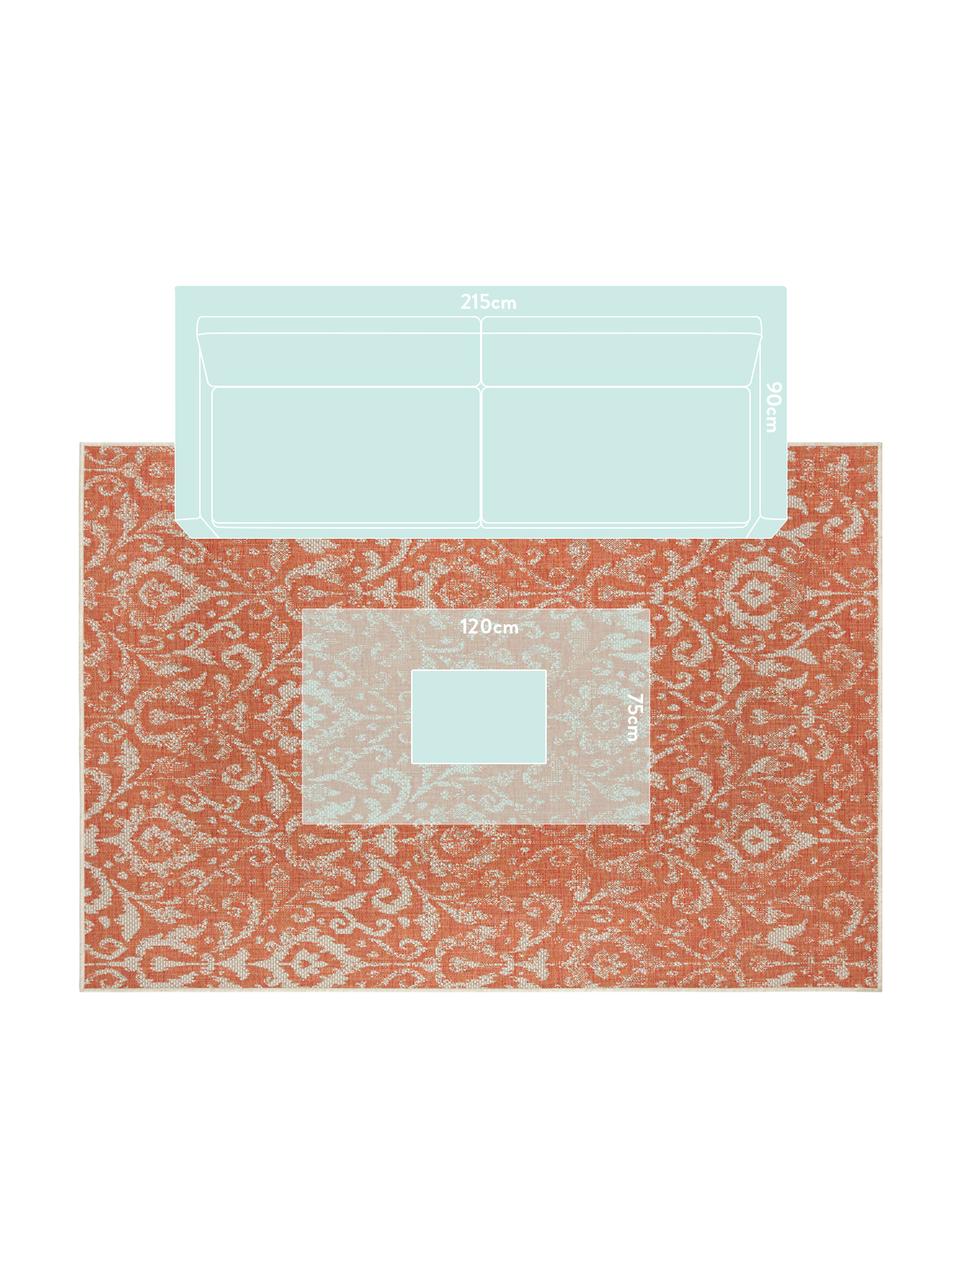 In- & Outdoor-Teppich Hatta im Vintage Look in Orange/Beige, 100% Polypropylen, Orangenrot, Beige, B 200 x L 290 cm (Grösse L)